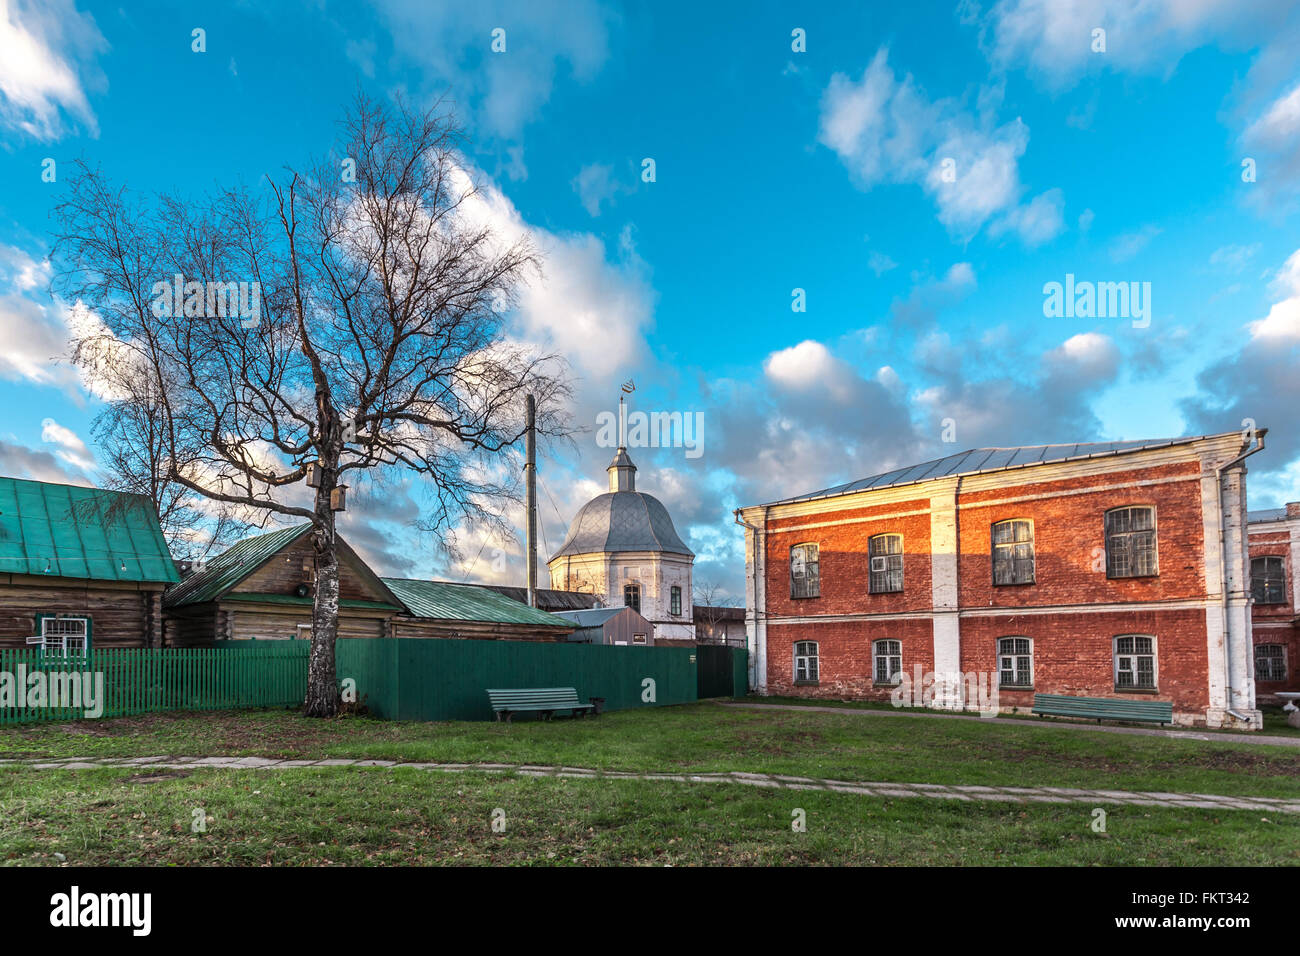 Pereslavl-Zalessky, Russia - 03 Novembre 2015: Goritsky monastero della Dormizione, essa era fondata nella prima metà del XIV centu Foto Stock